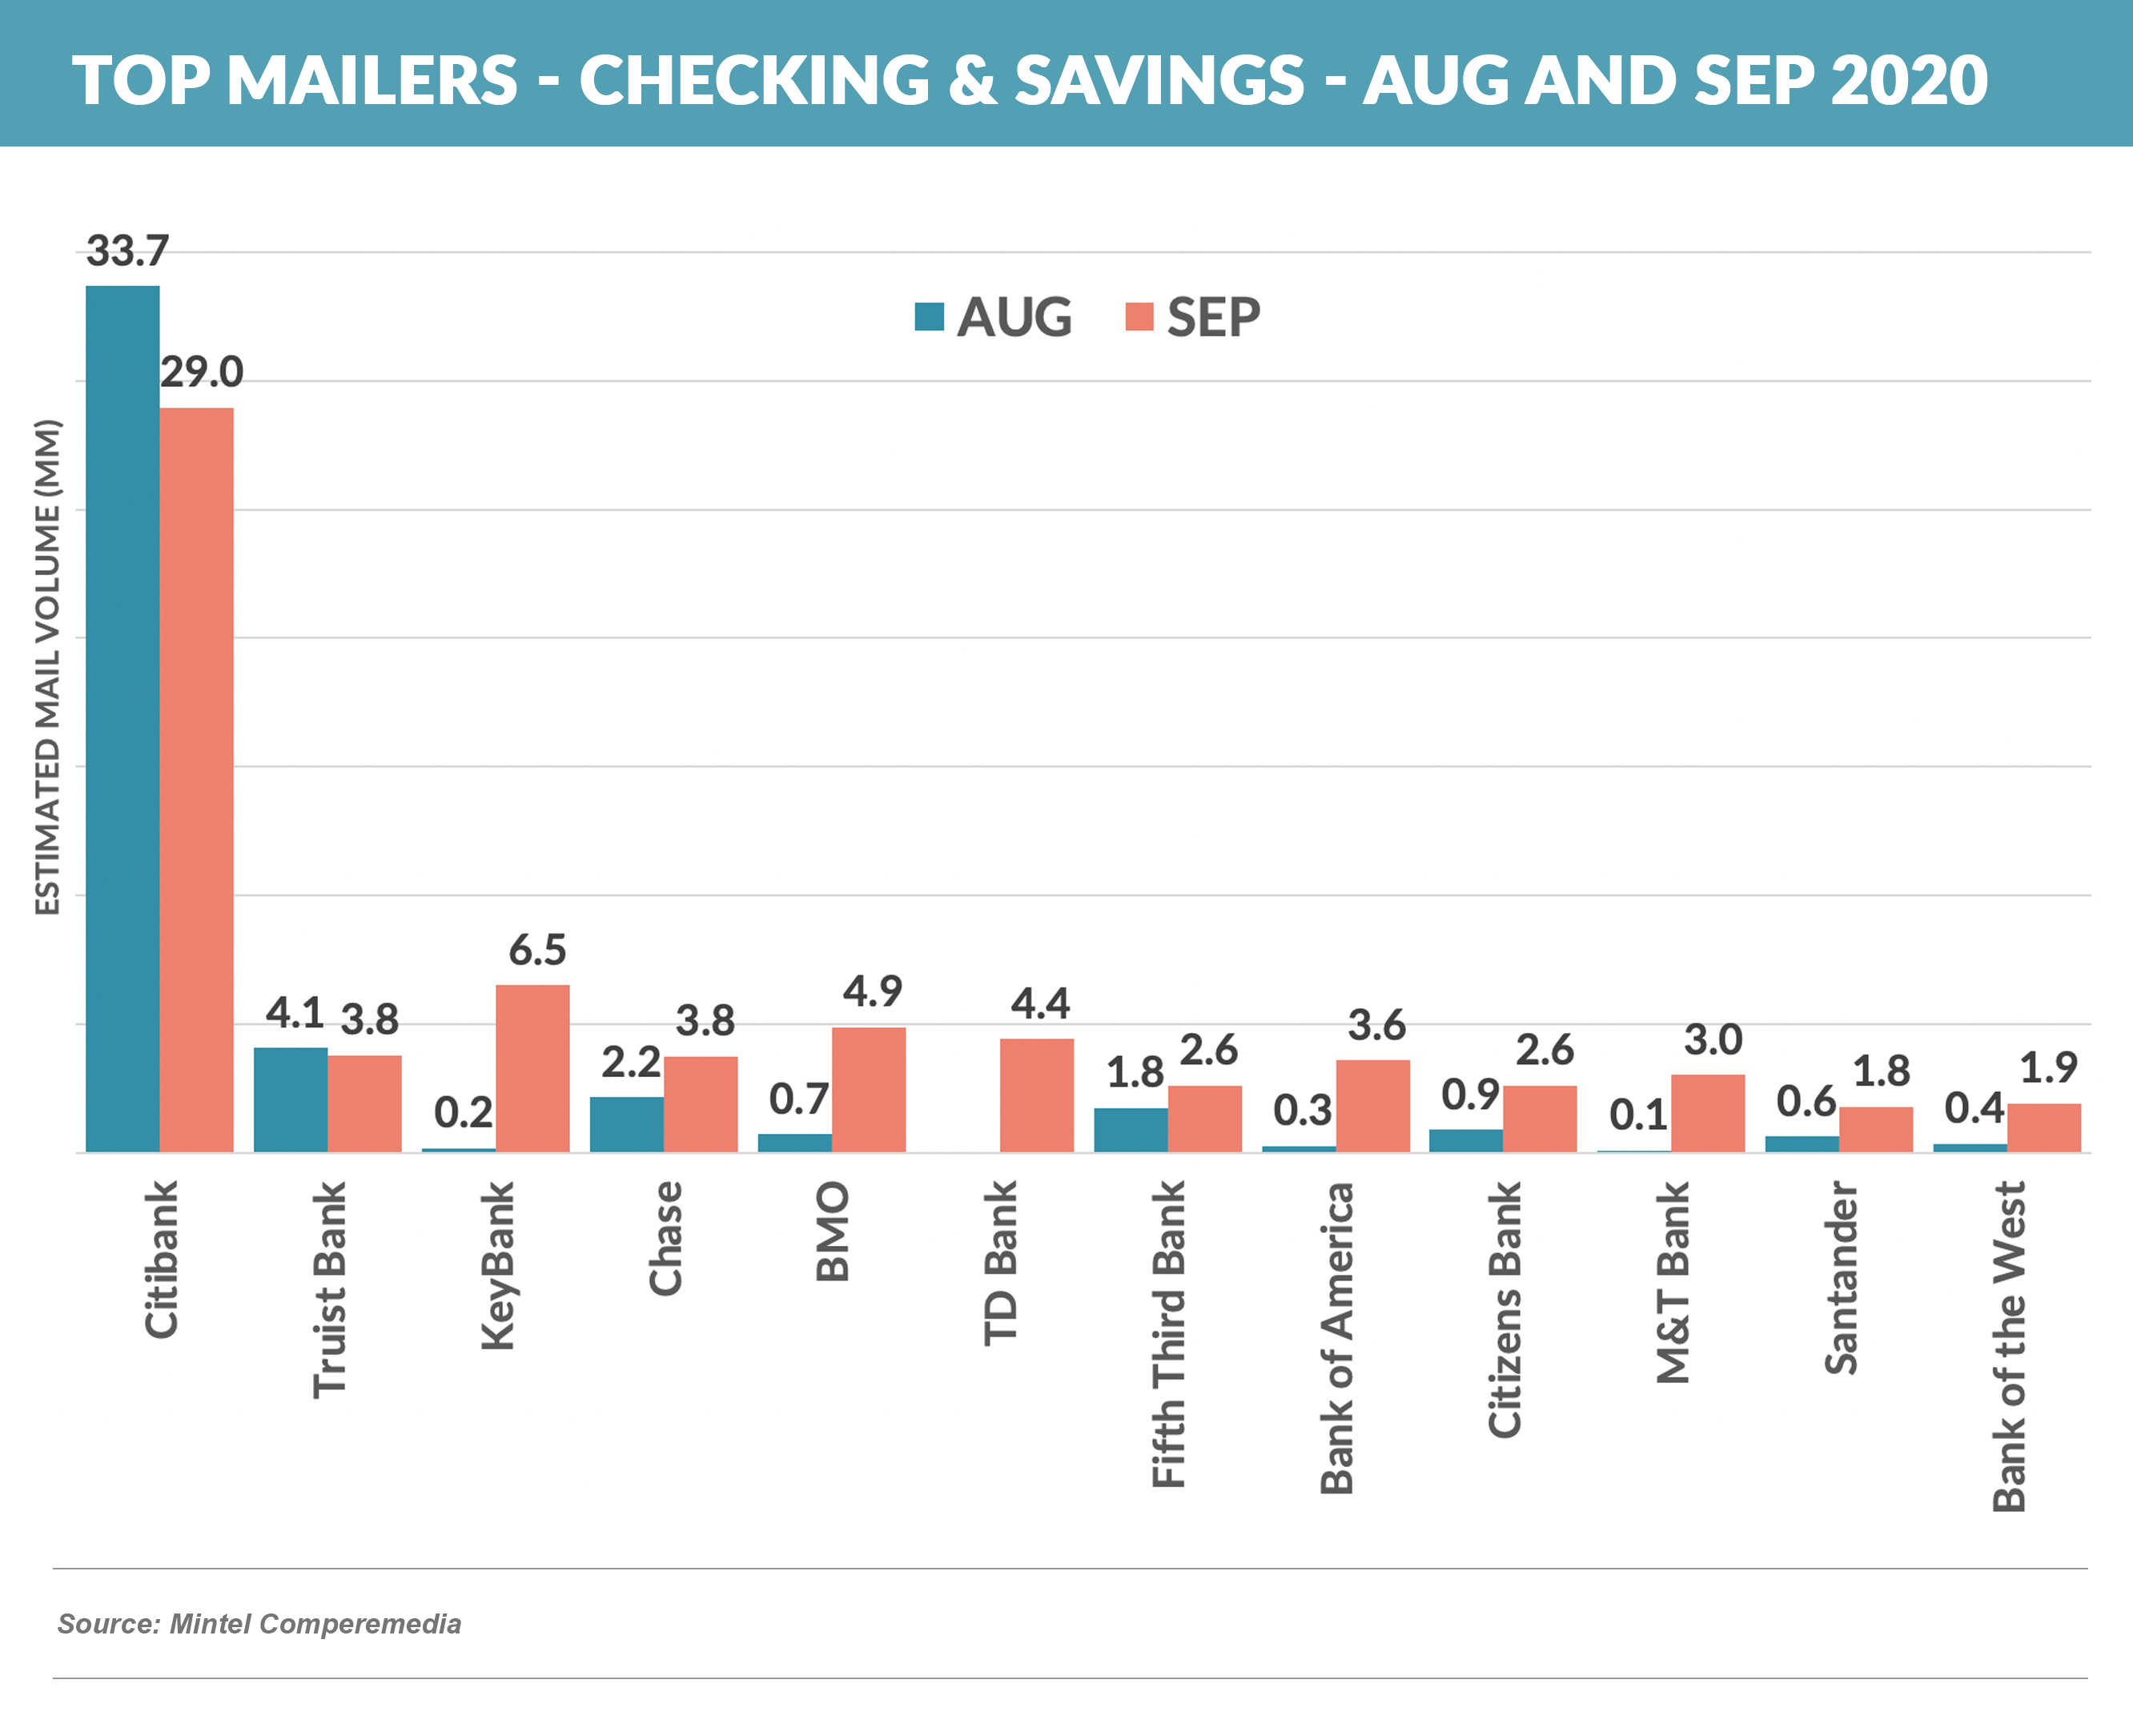 Top Mailers - Checking & Savings - Aug and Sep 2020